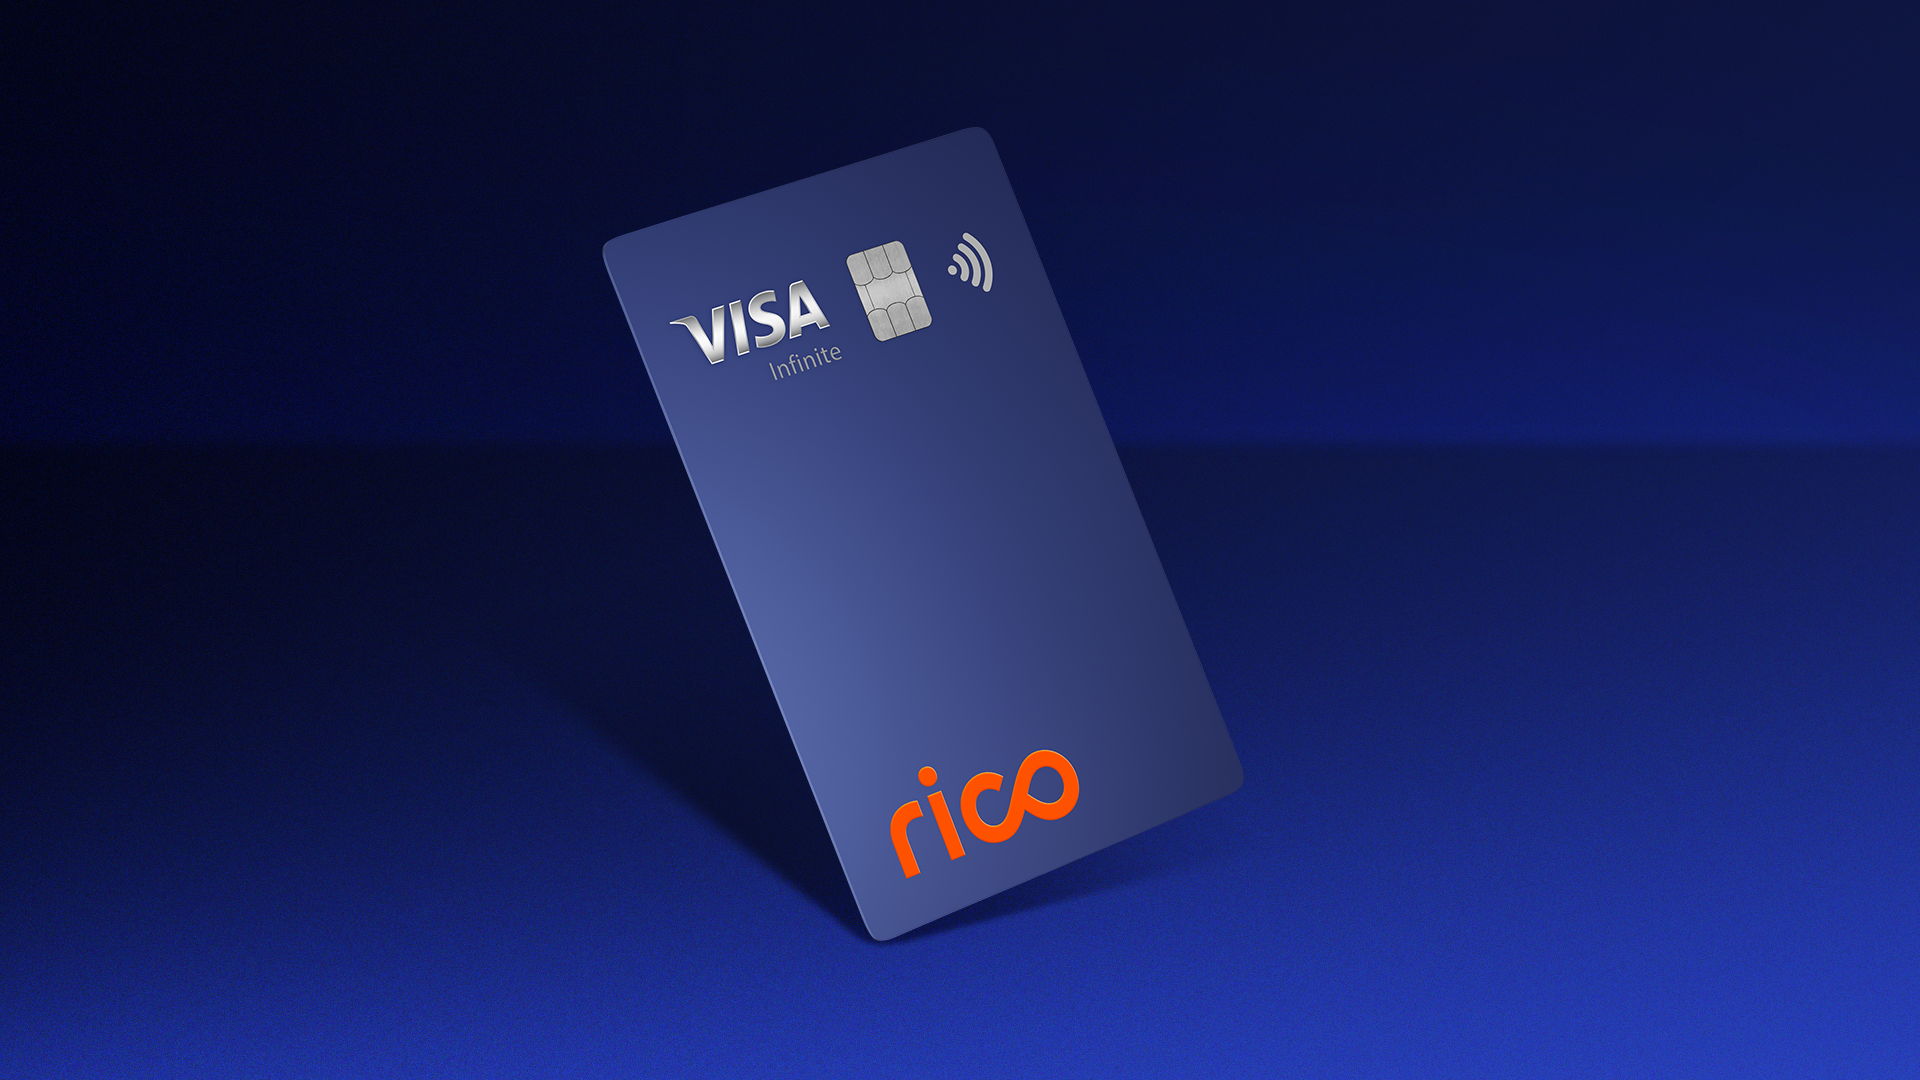 Cartão Rico Visa Infinite terá Investback de até 20% em ofertas exclusivas no Dia dos Pais